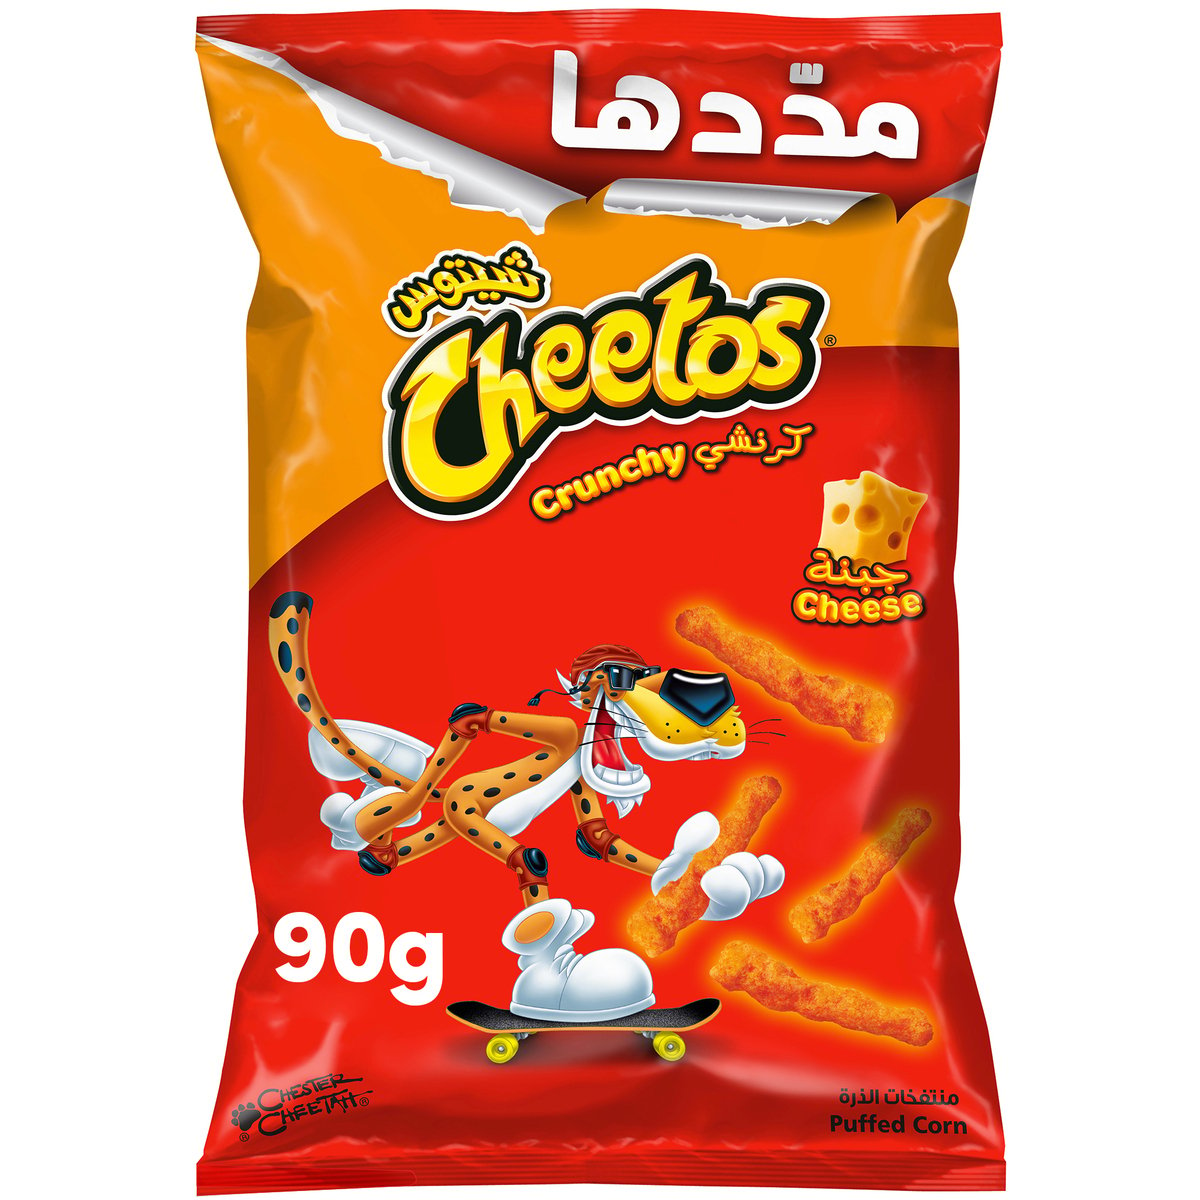 Cheetos Crunchy Flaming Hot Chips 90 g